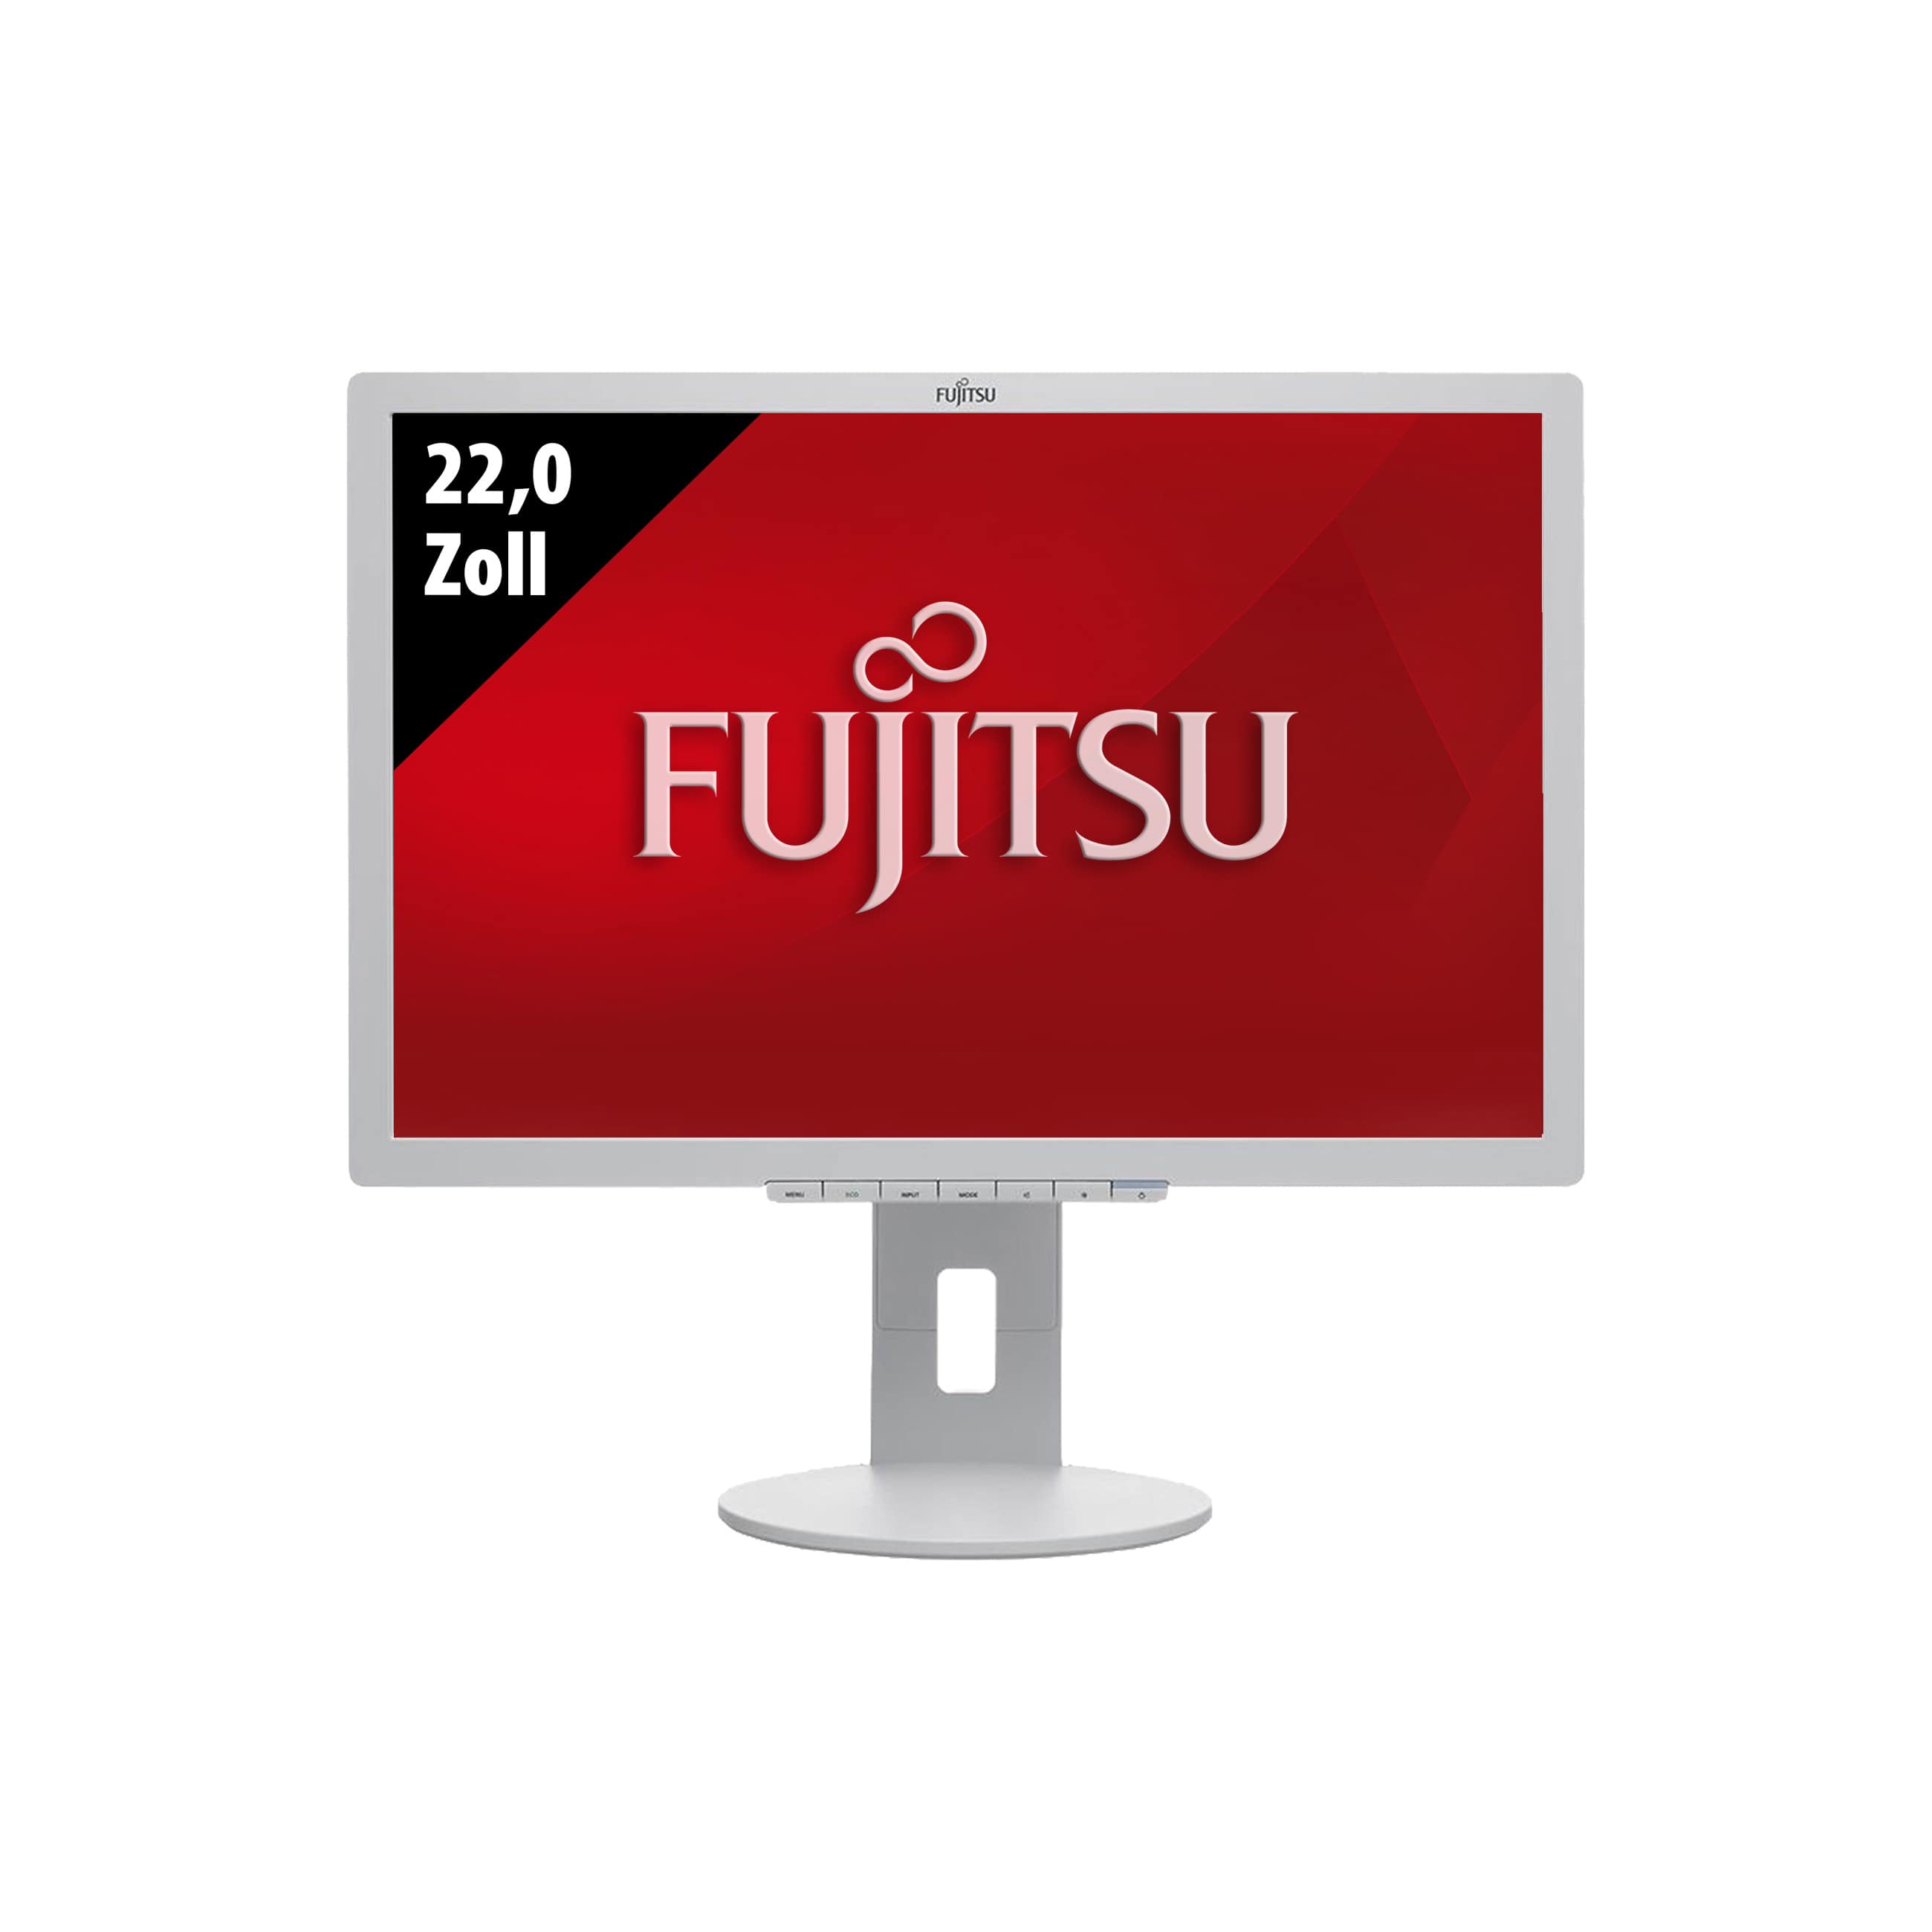 Fujitsu Display B22-8 WE Neo - 1680 x 1050 - WSXGA+ - 22,0 Zoll - 5 ms - Grau